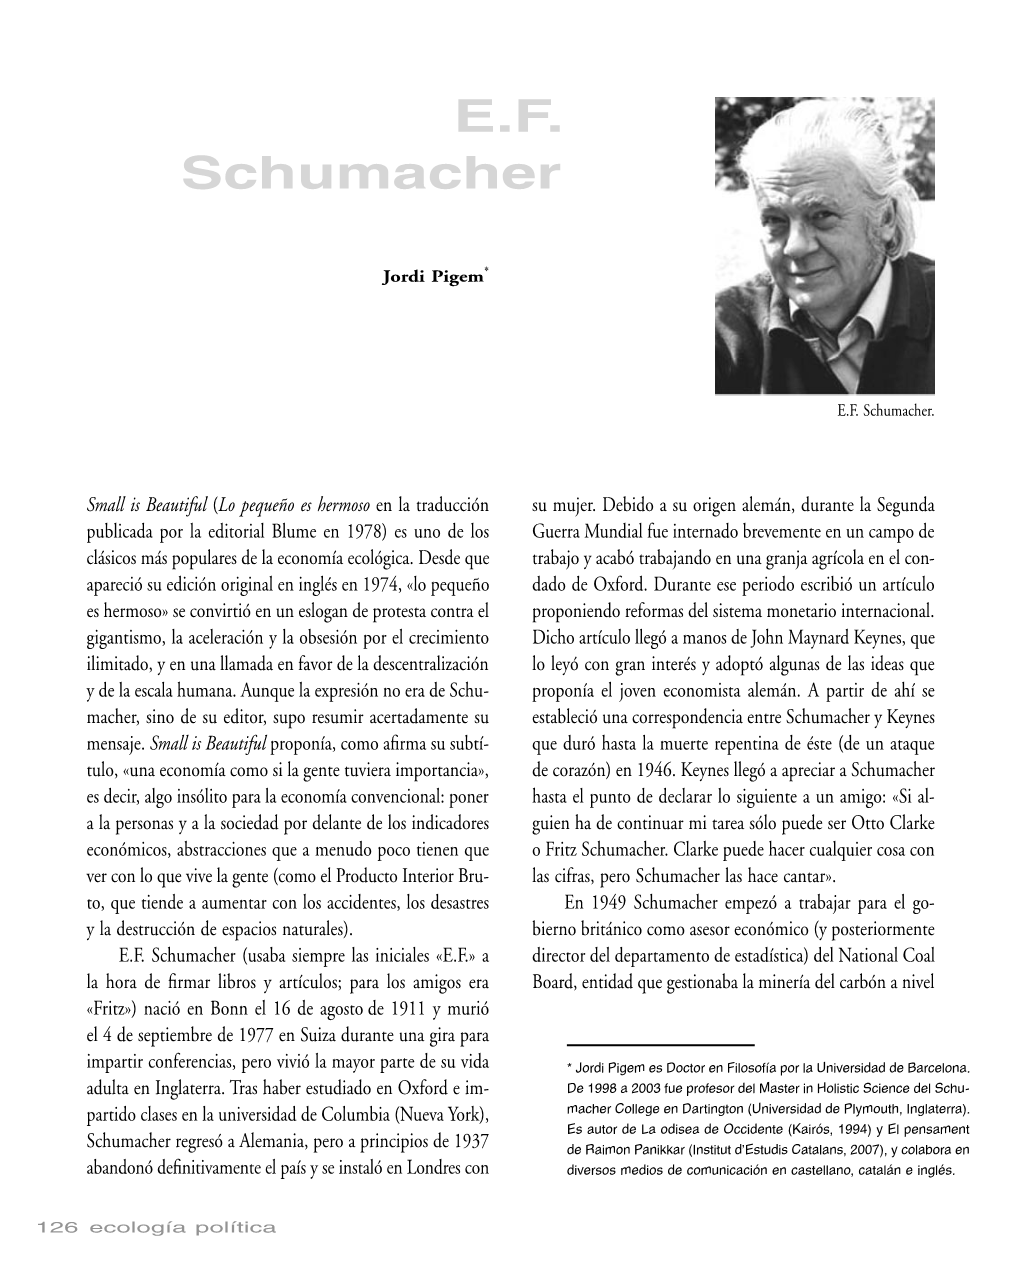 E.F. Schumacher